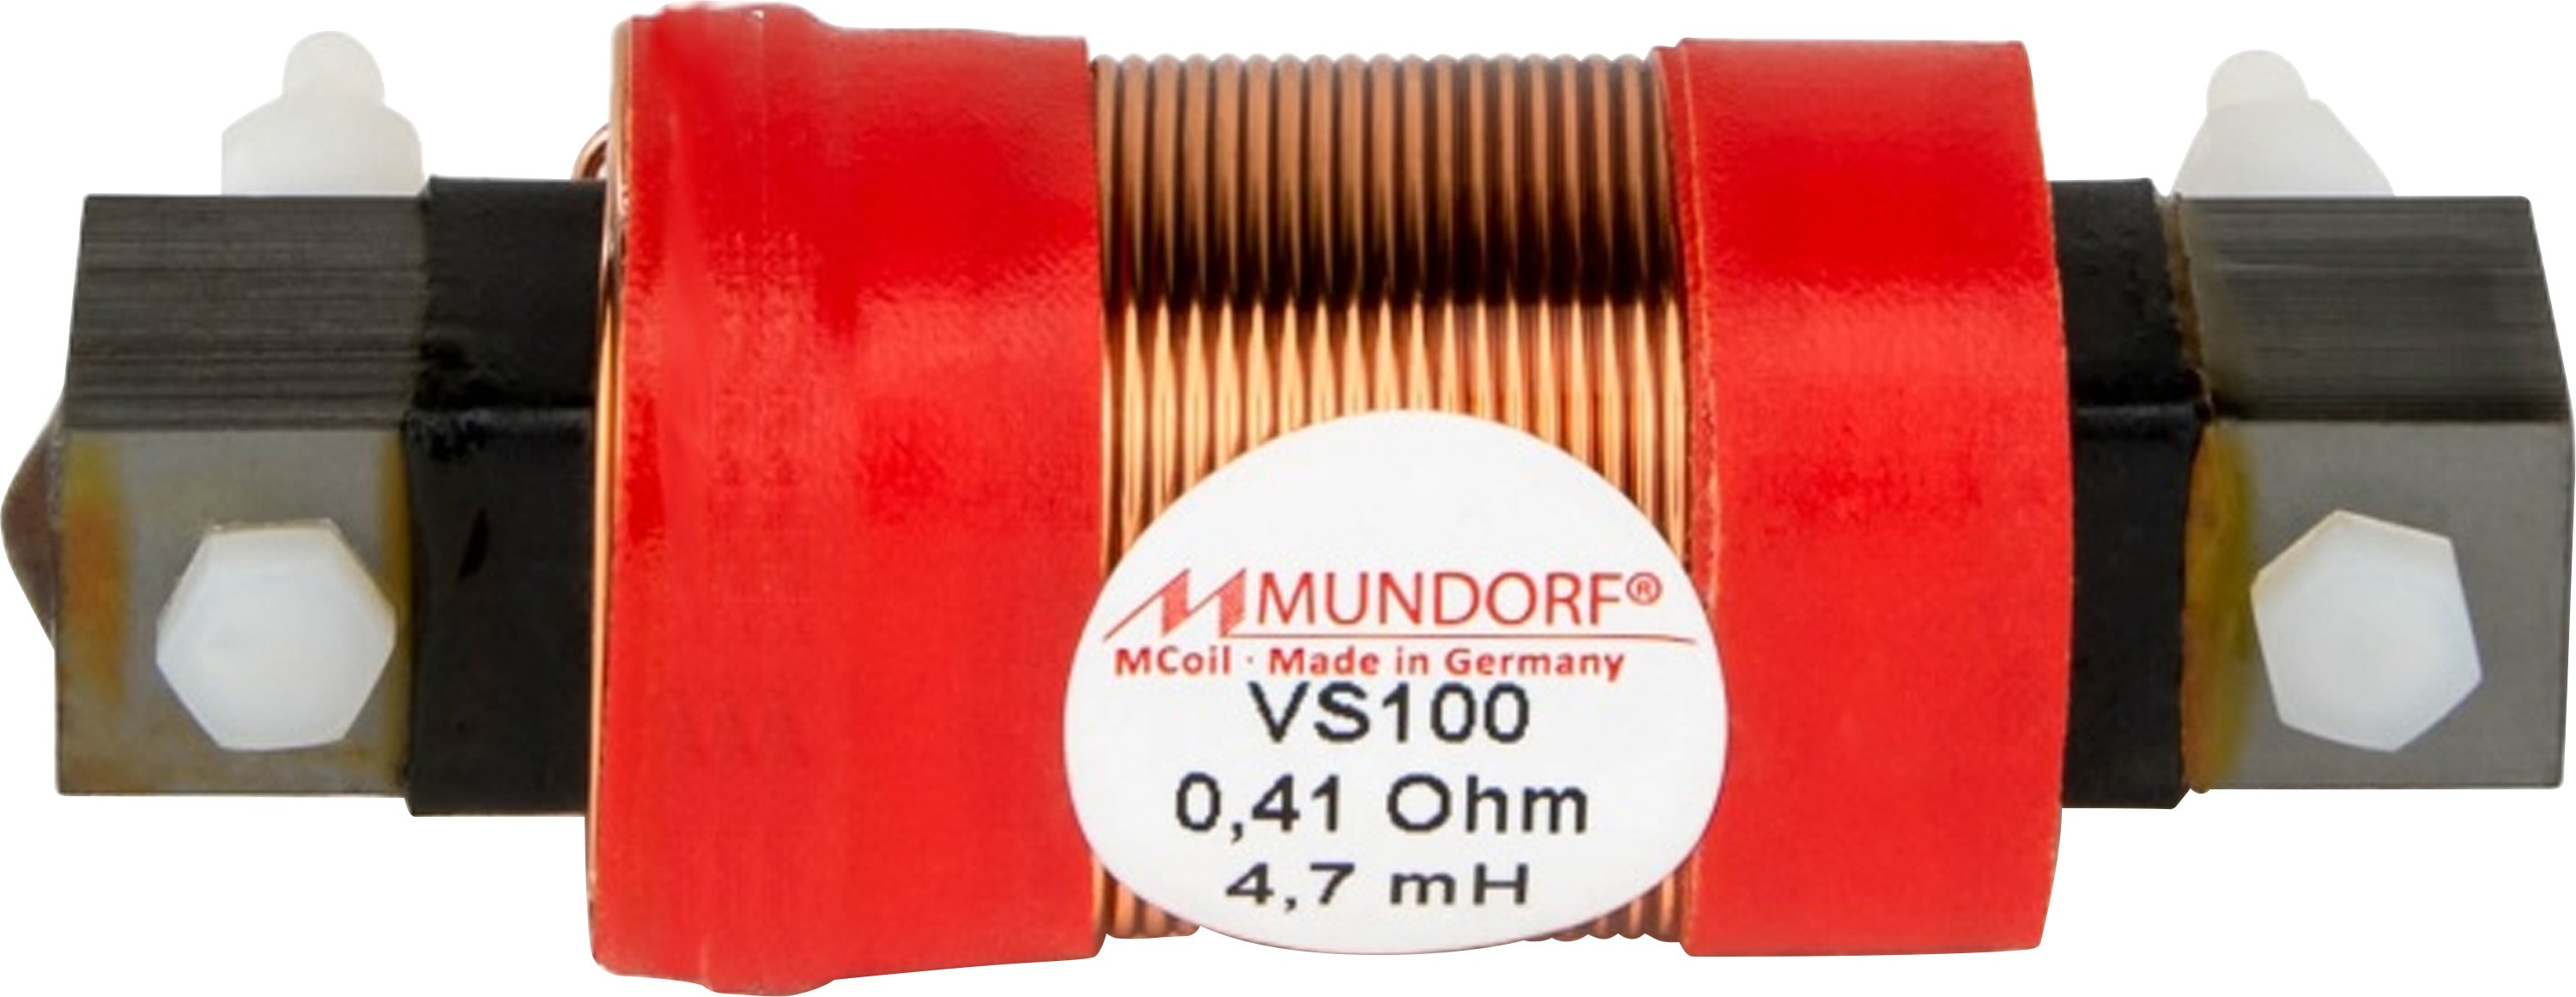 MUNDORF VS100-6.8 MCOIL ICORE Copper Coil Feron Core 6.8mH